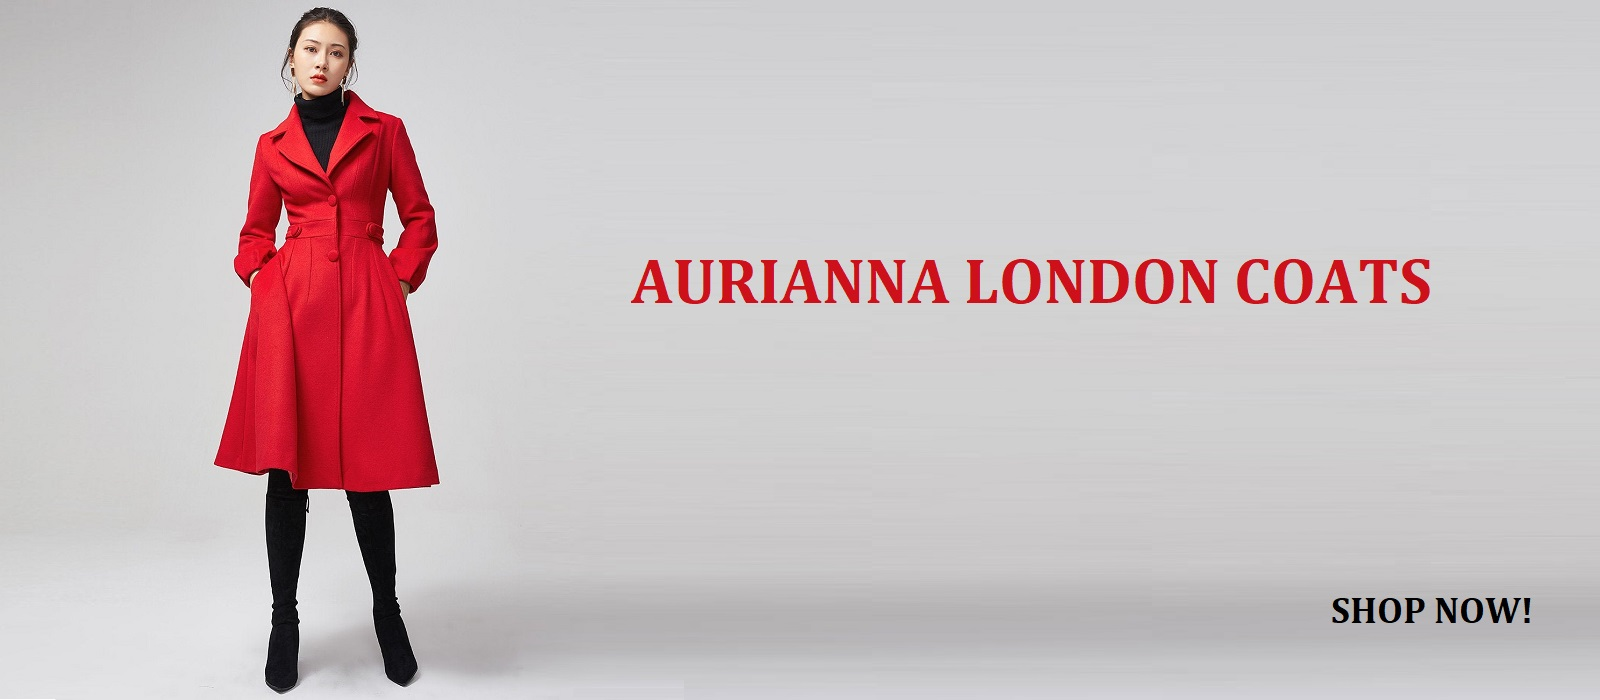 Aurianna London Coats